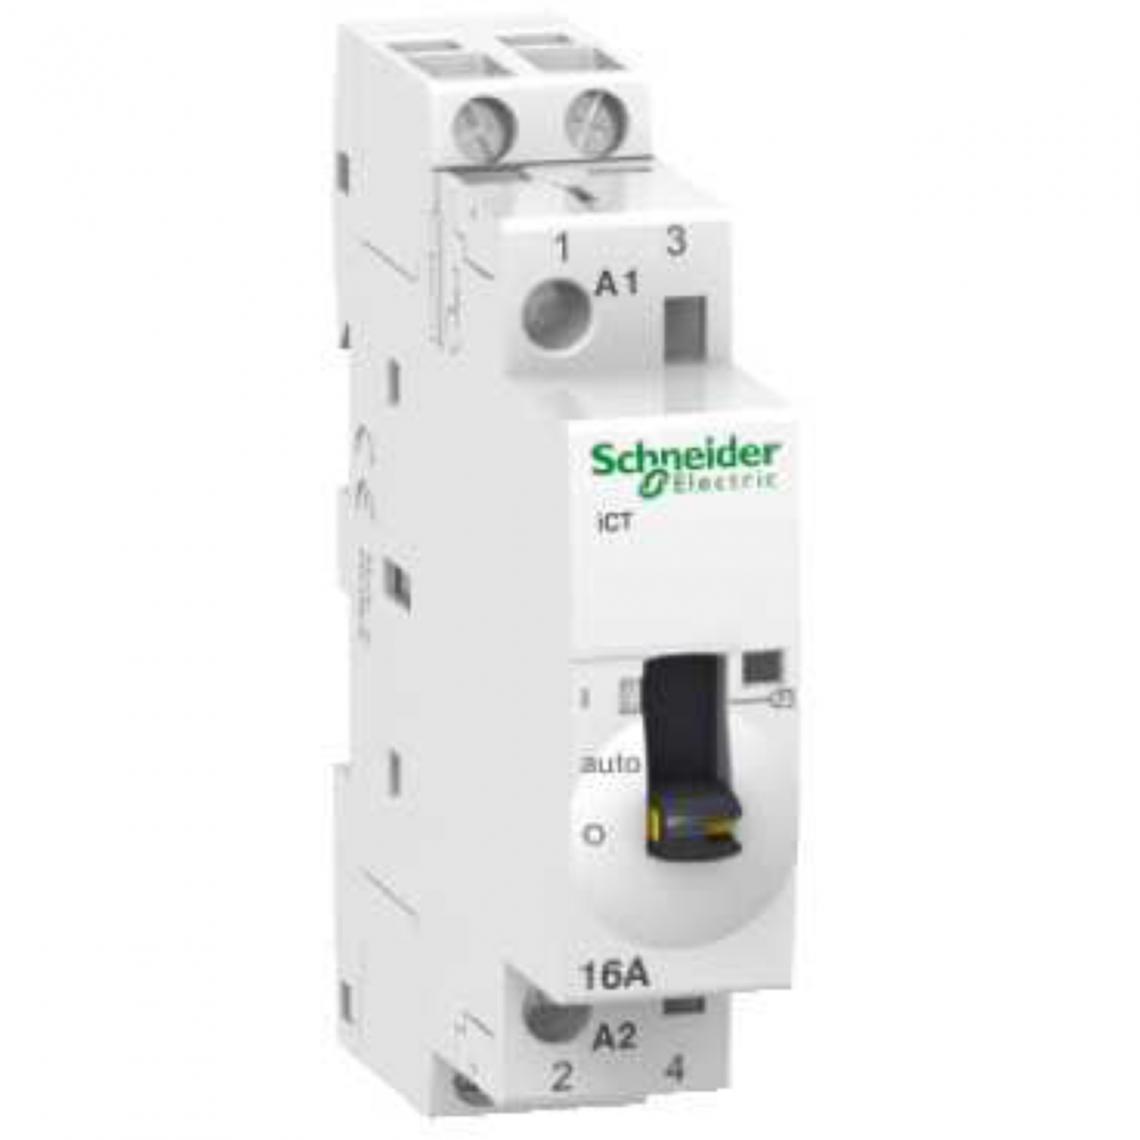 Schneider Electric - contacteur - ict commande manuelle - 16a - 2no - 230 - 240 vca - schneider acti9 a9c23712 - Télérupteurs, minuteries et horloges